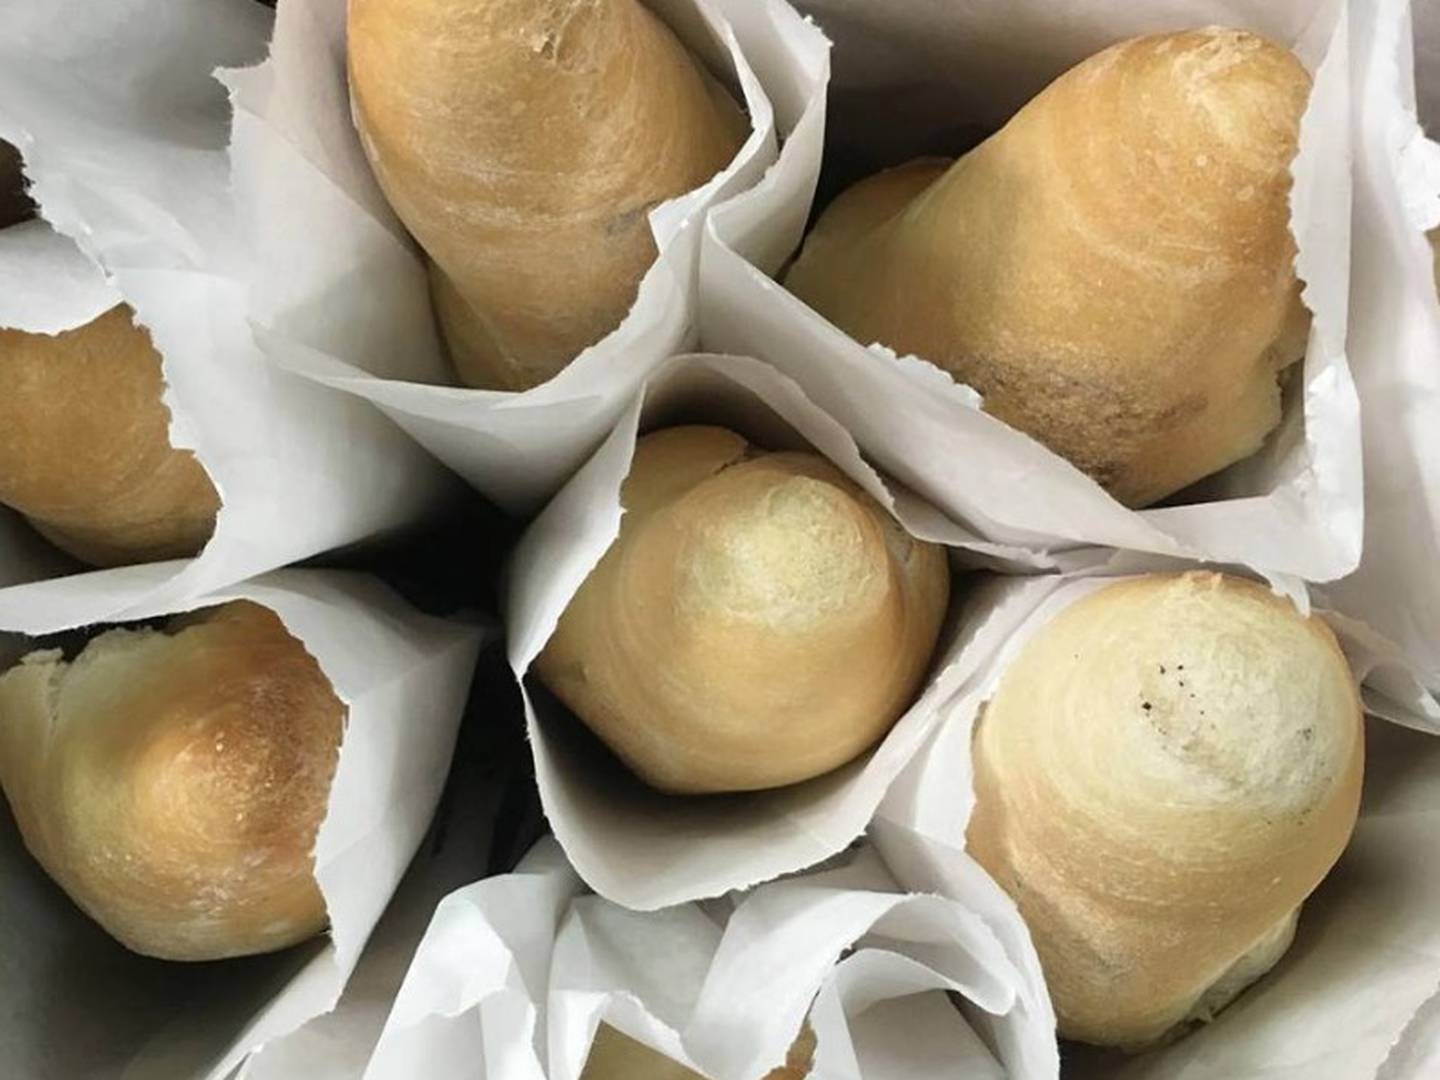 Compre pan sobao por una buena causa – Sabrosia